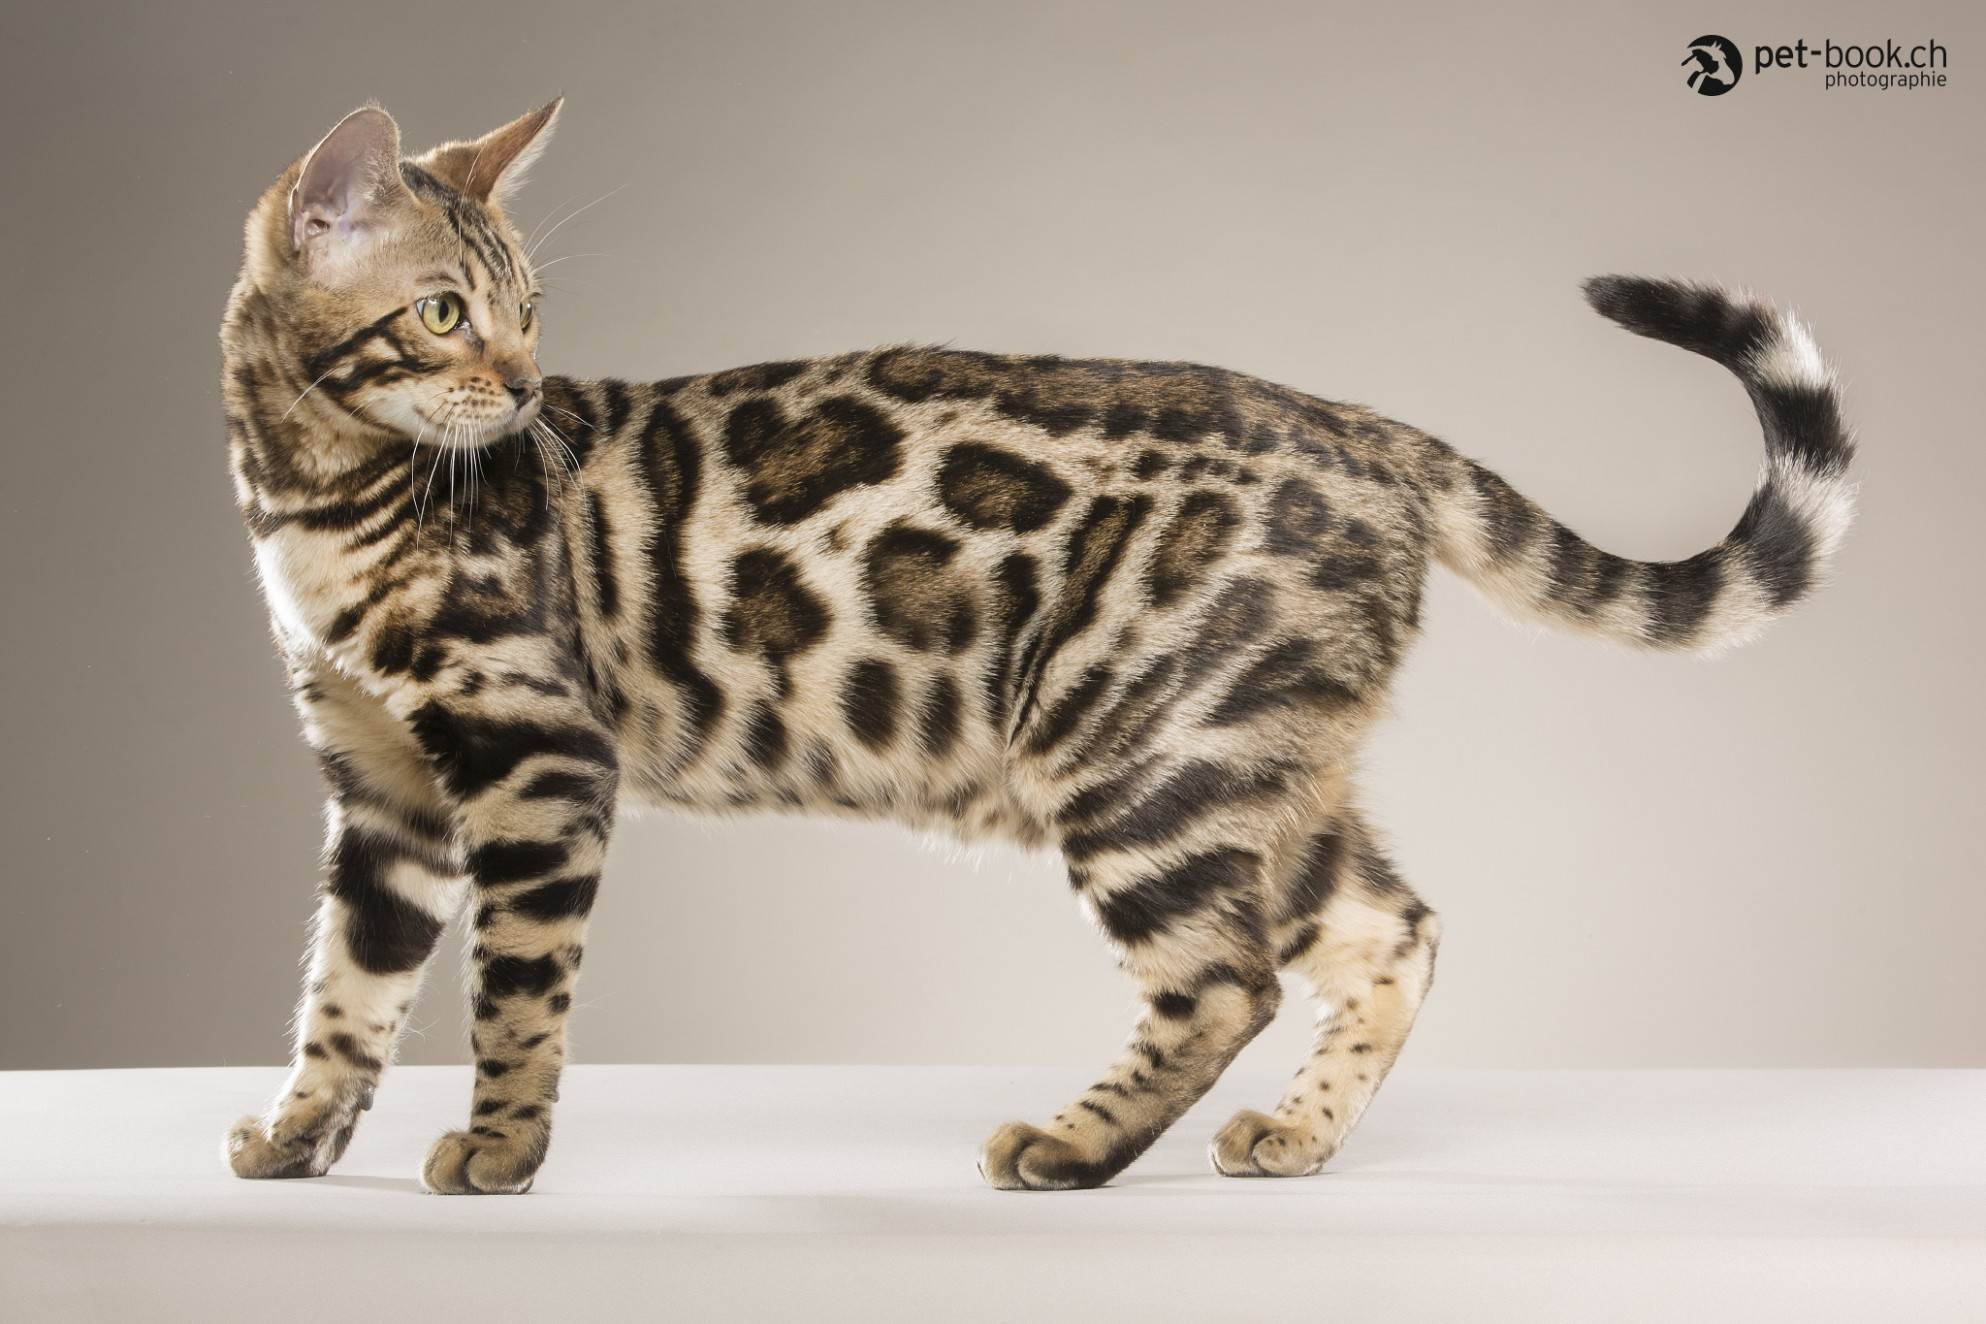 Пятнистые породы кошек и котов: фото диких и домашних питомцев, описание характера и привычек